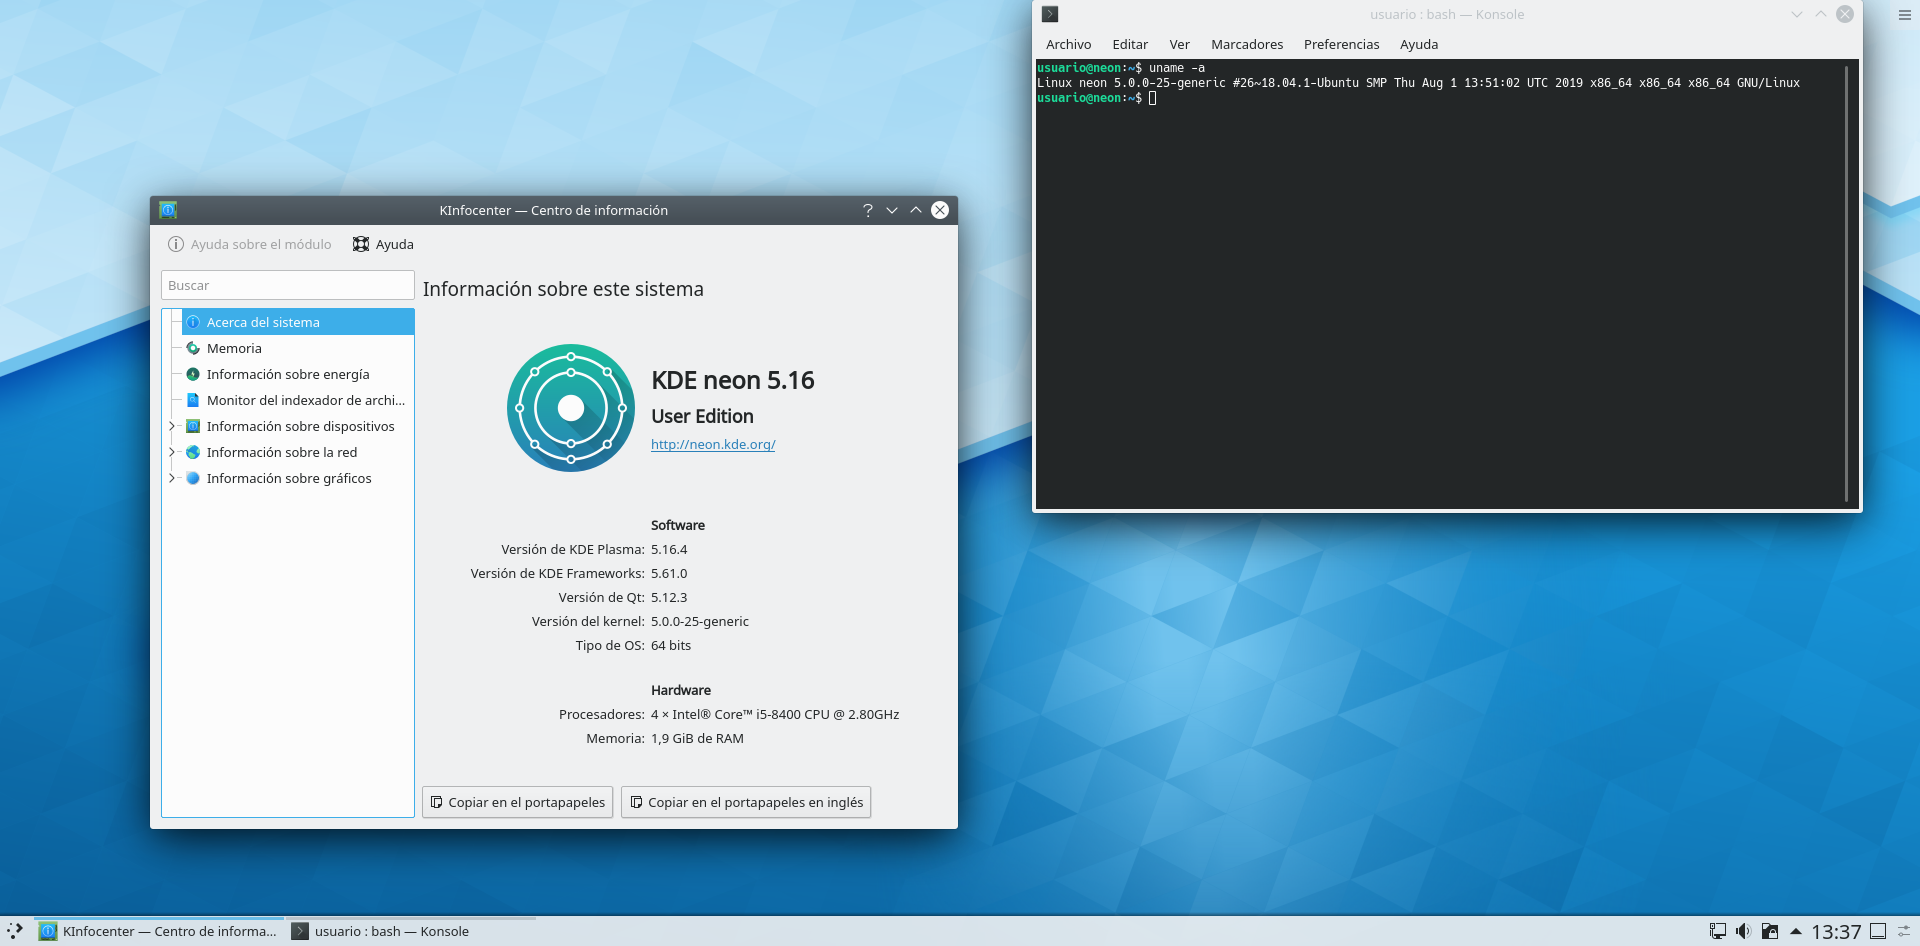 KDE Neon User Edition